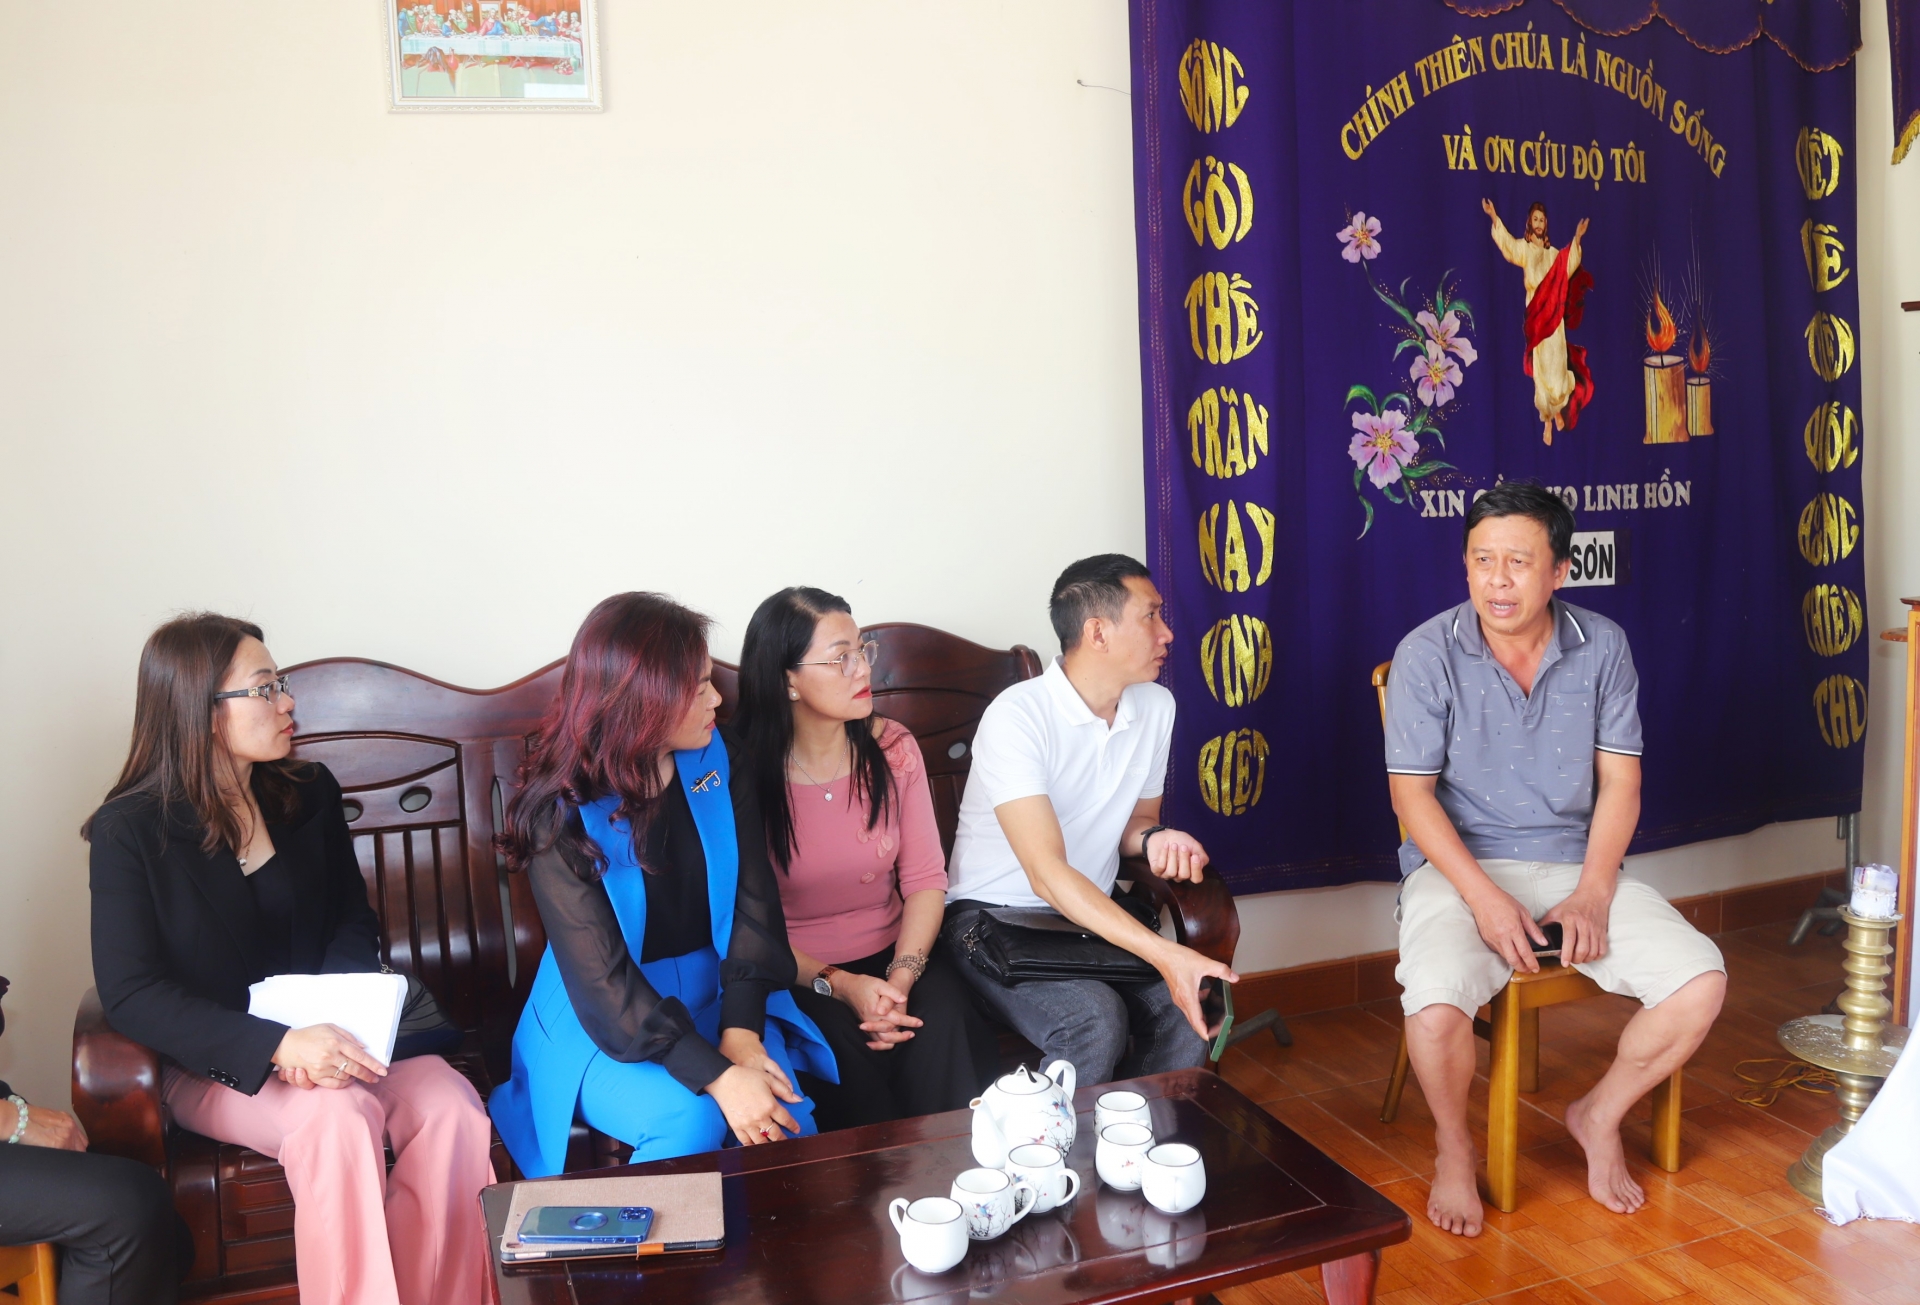 Ông Phan Minh Ngọc (bìa phải), bố chồng chị Linh gửi lời cảm ơn tới Báo Lâm Đồng, chính quyền địa phương và bạn đọc đã đồng hành chia sẻ khó khăn, nỗi đau cùng gia đình